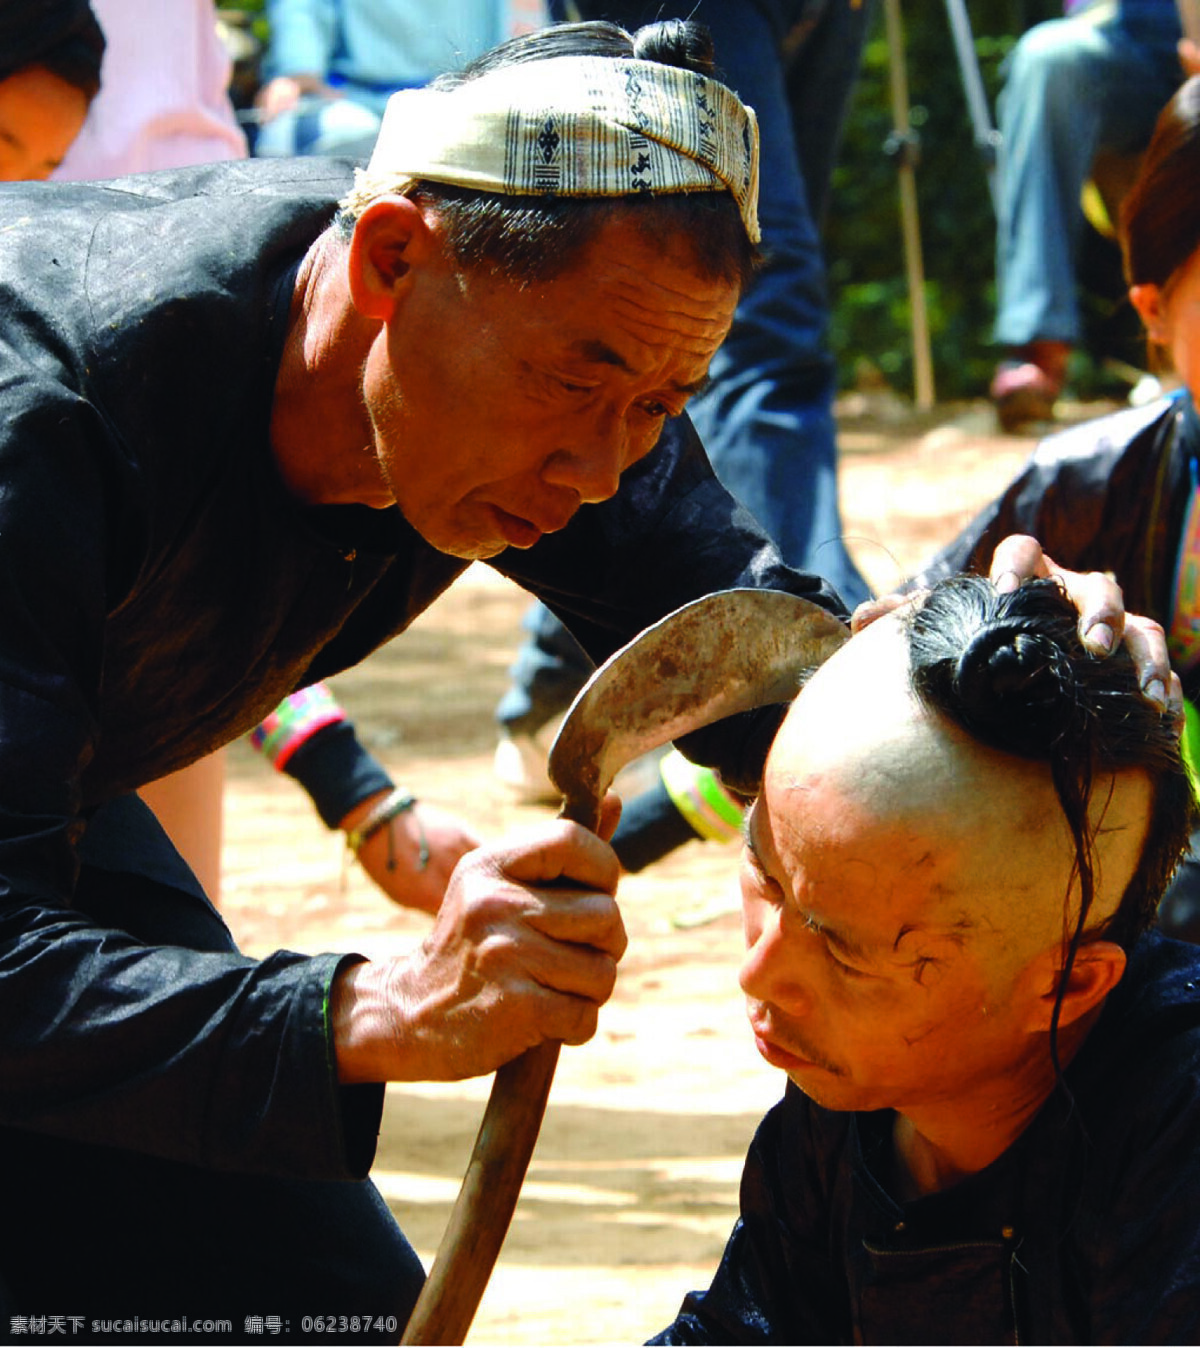 苗寨 剃头 岜沙 凯里 贵州 民俗 旅游摄影 人文景观 摄影图库 300